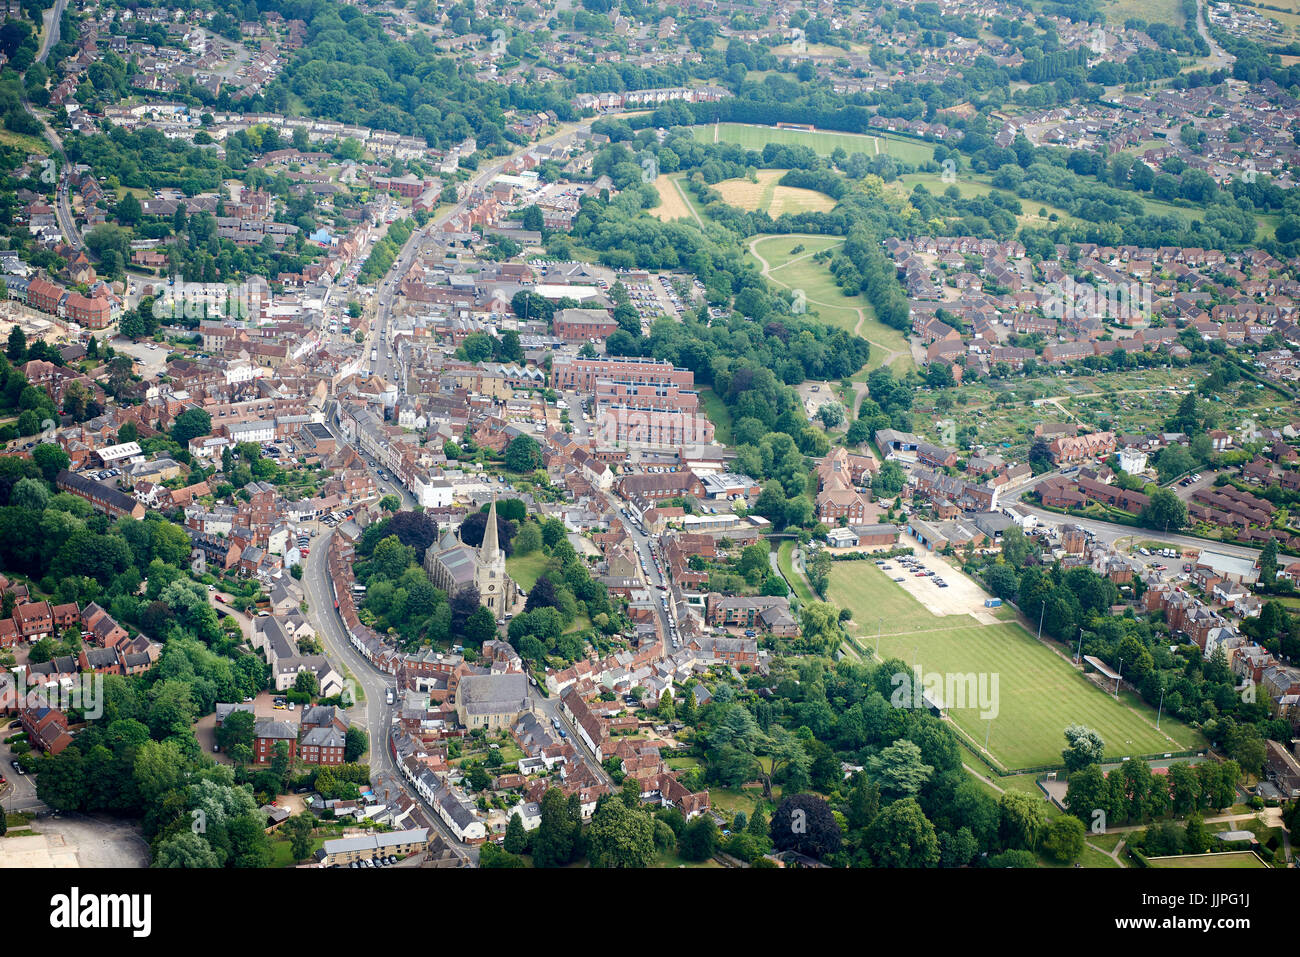 Una arial vista del centro de la ciudad de Buckingham, Sudeste de Inglaterra, Reino Unido. Foto de stock